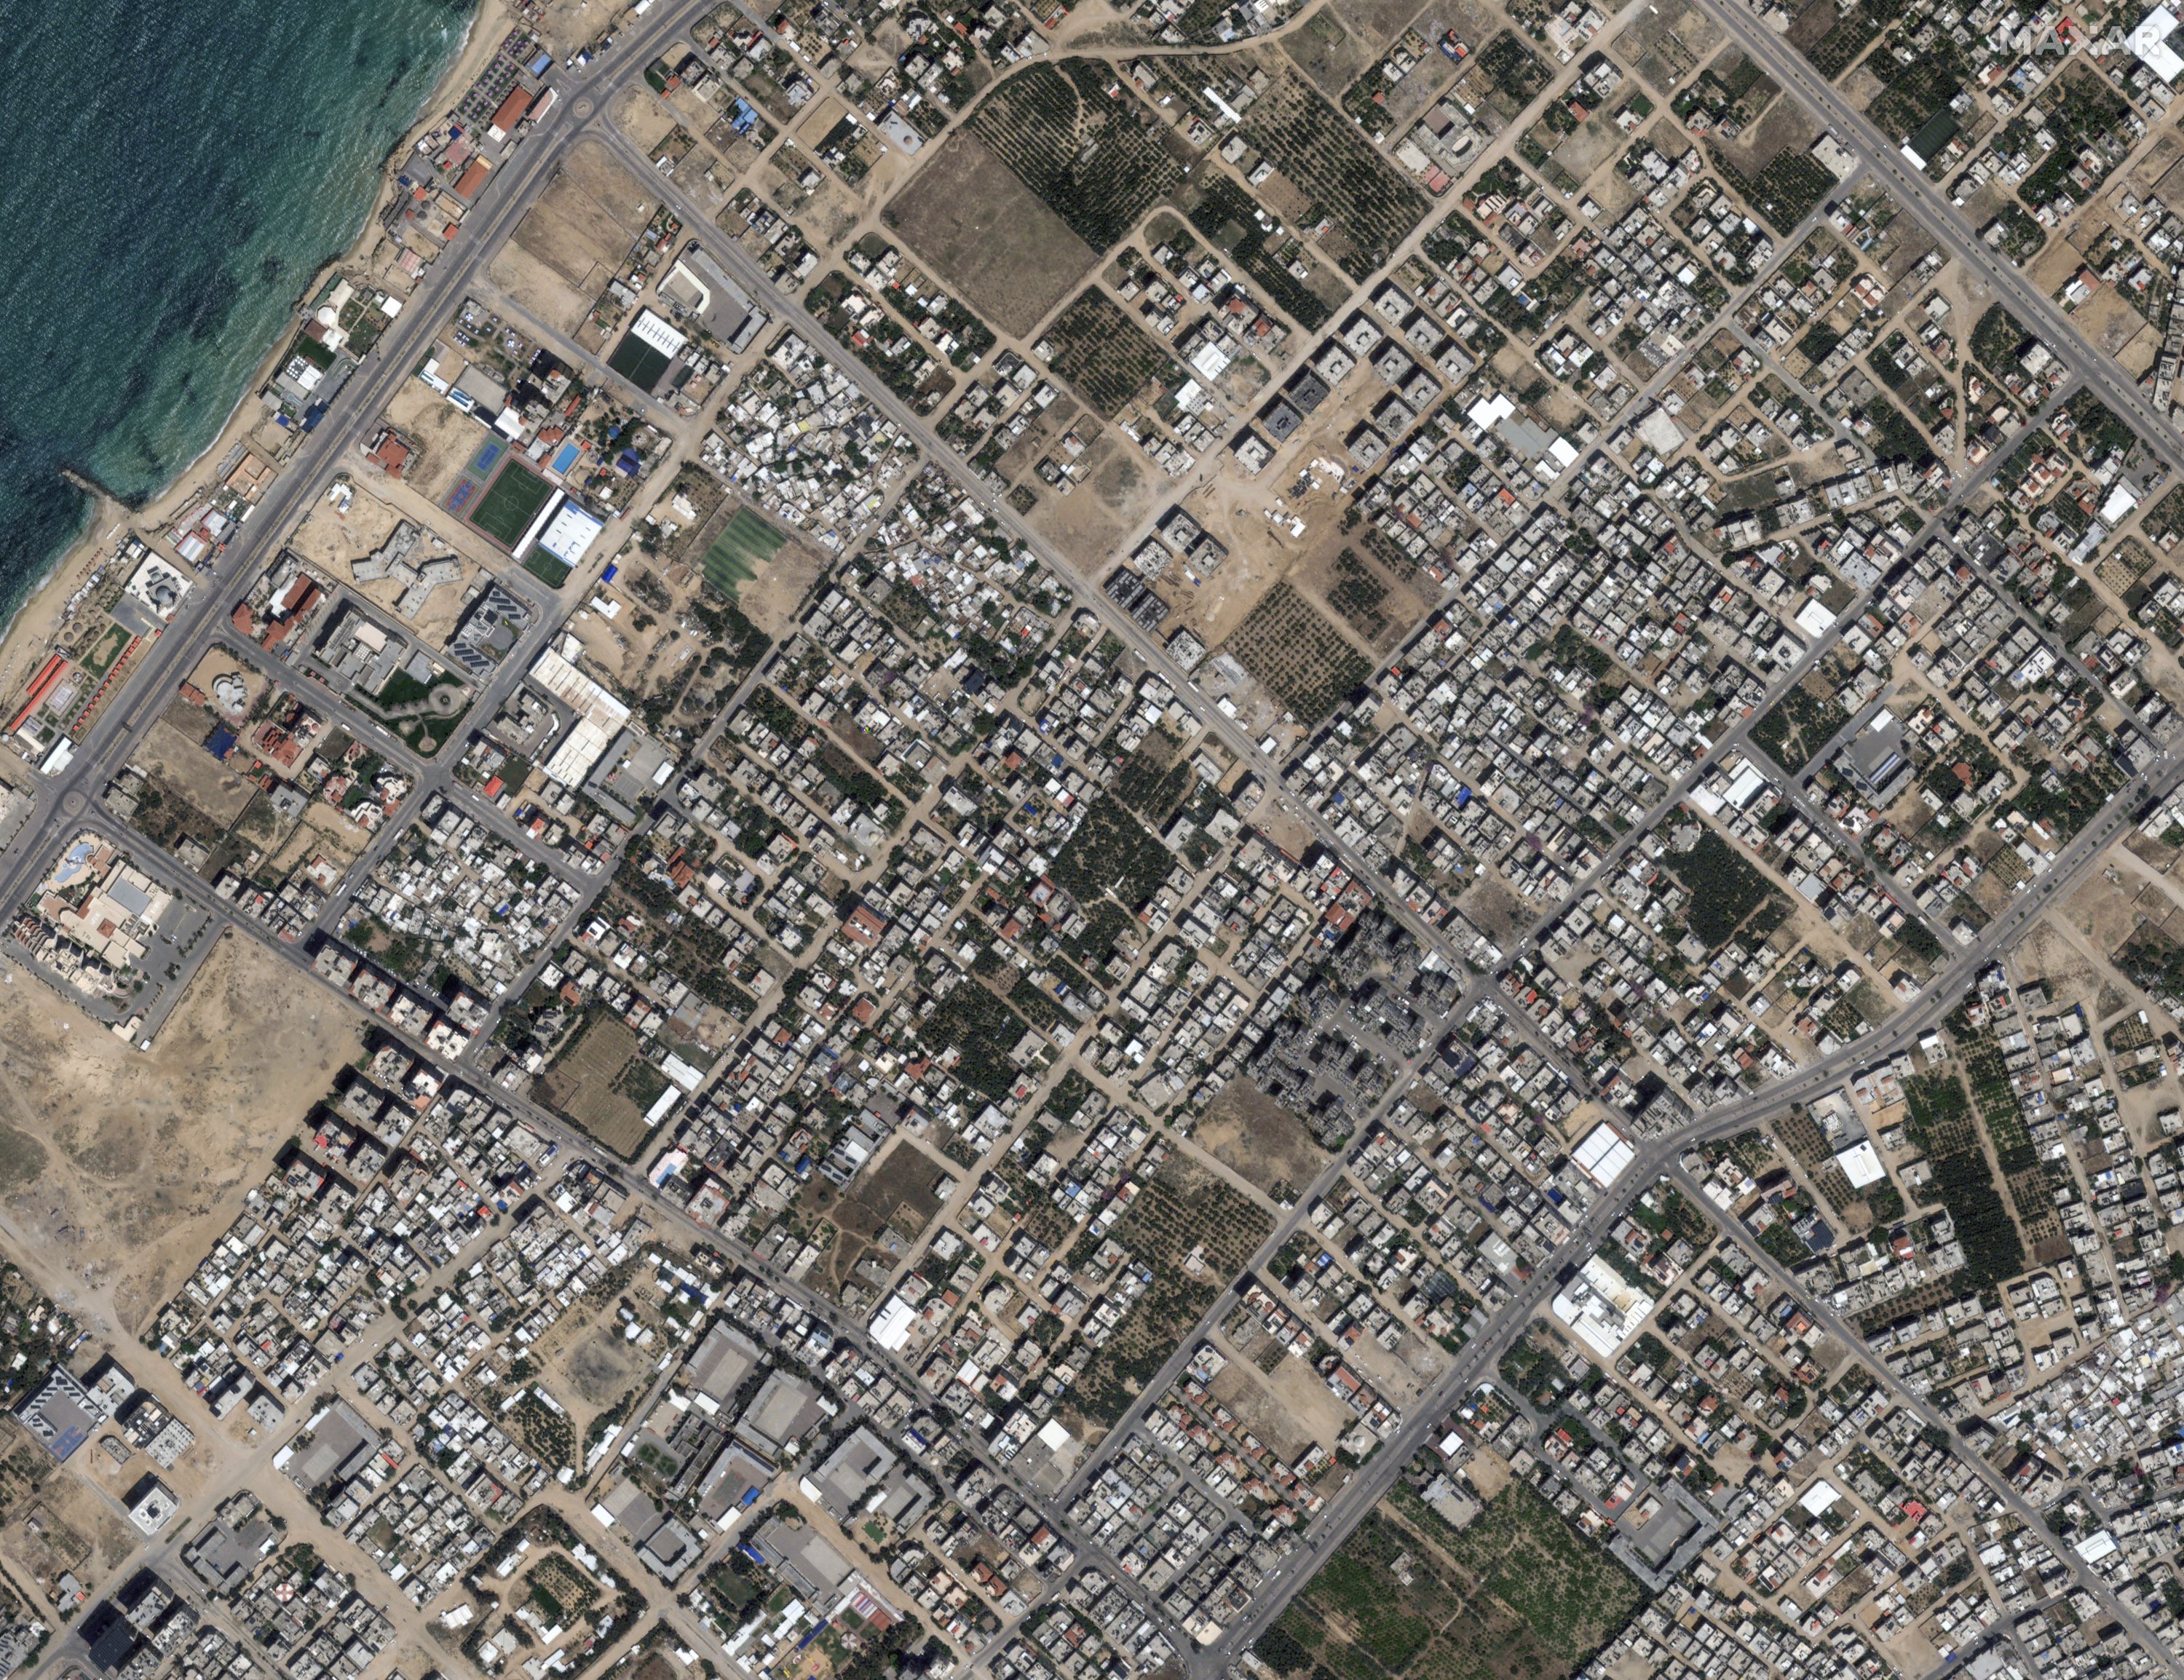 Снимки г Ашхабада с спутника. Авиаудары Израиля 1967 году карта. Бенгази фото города.